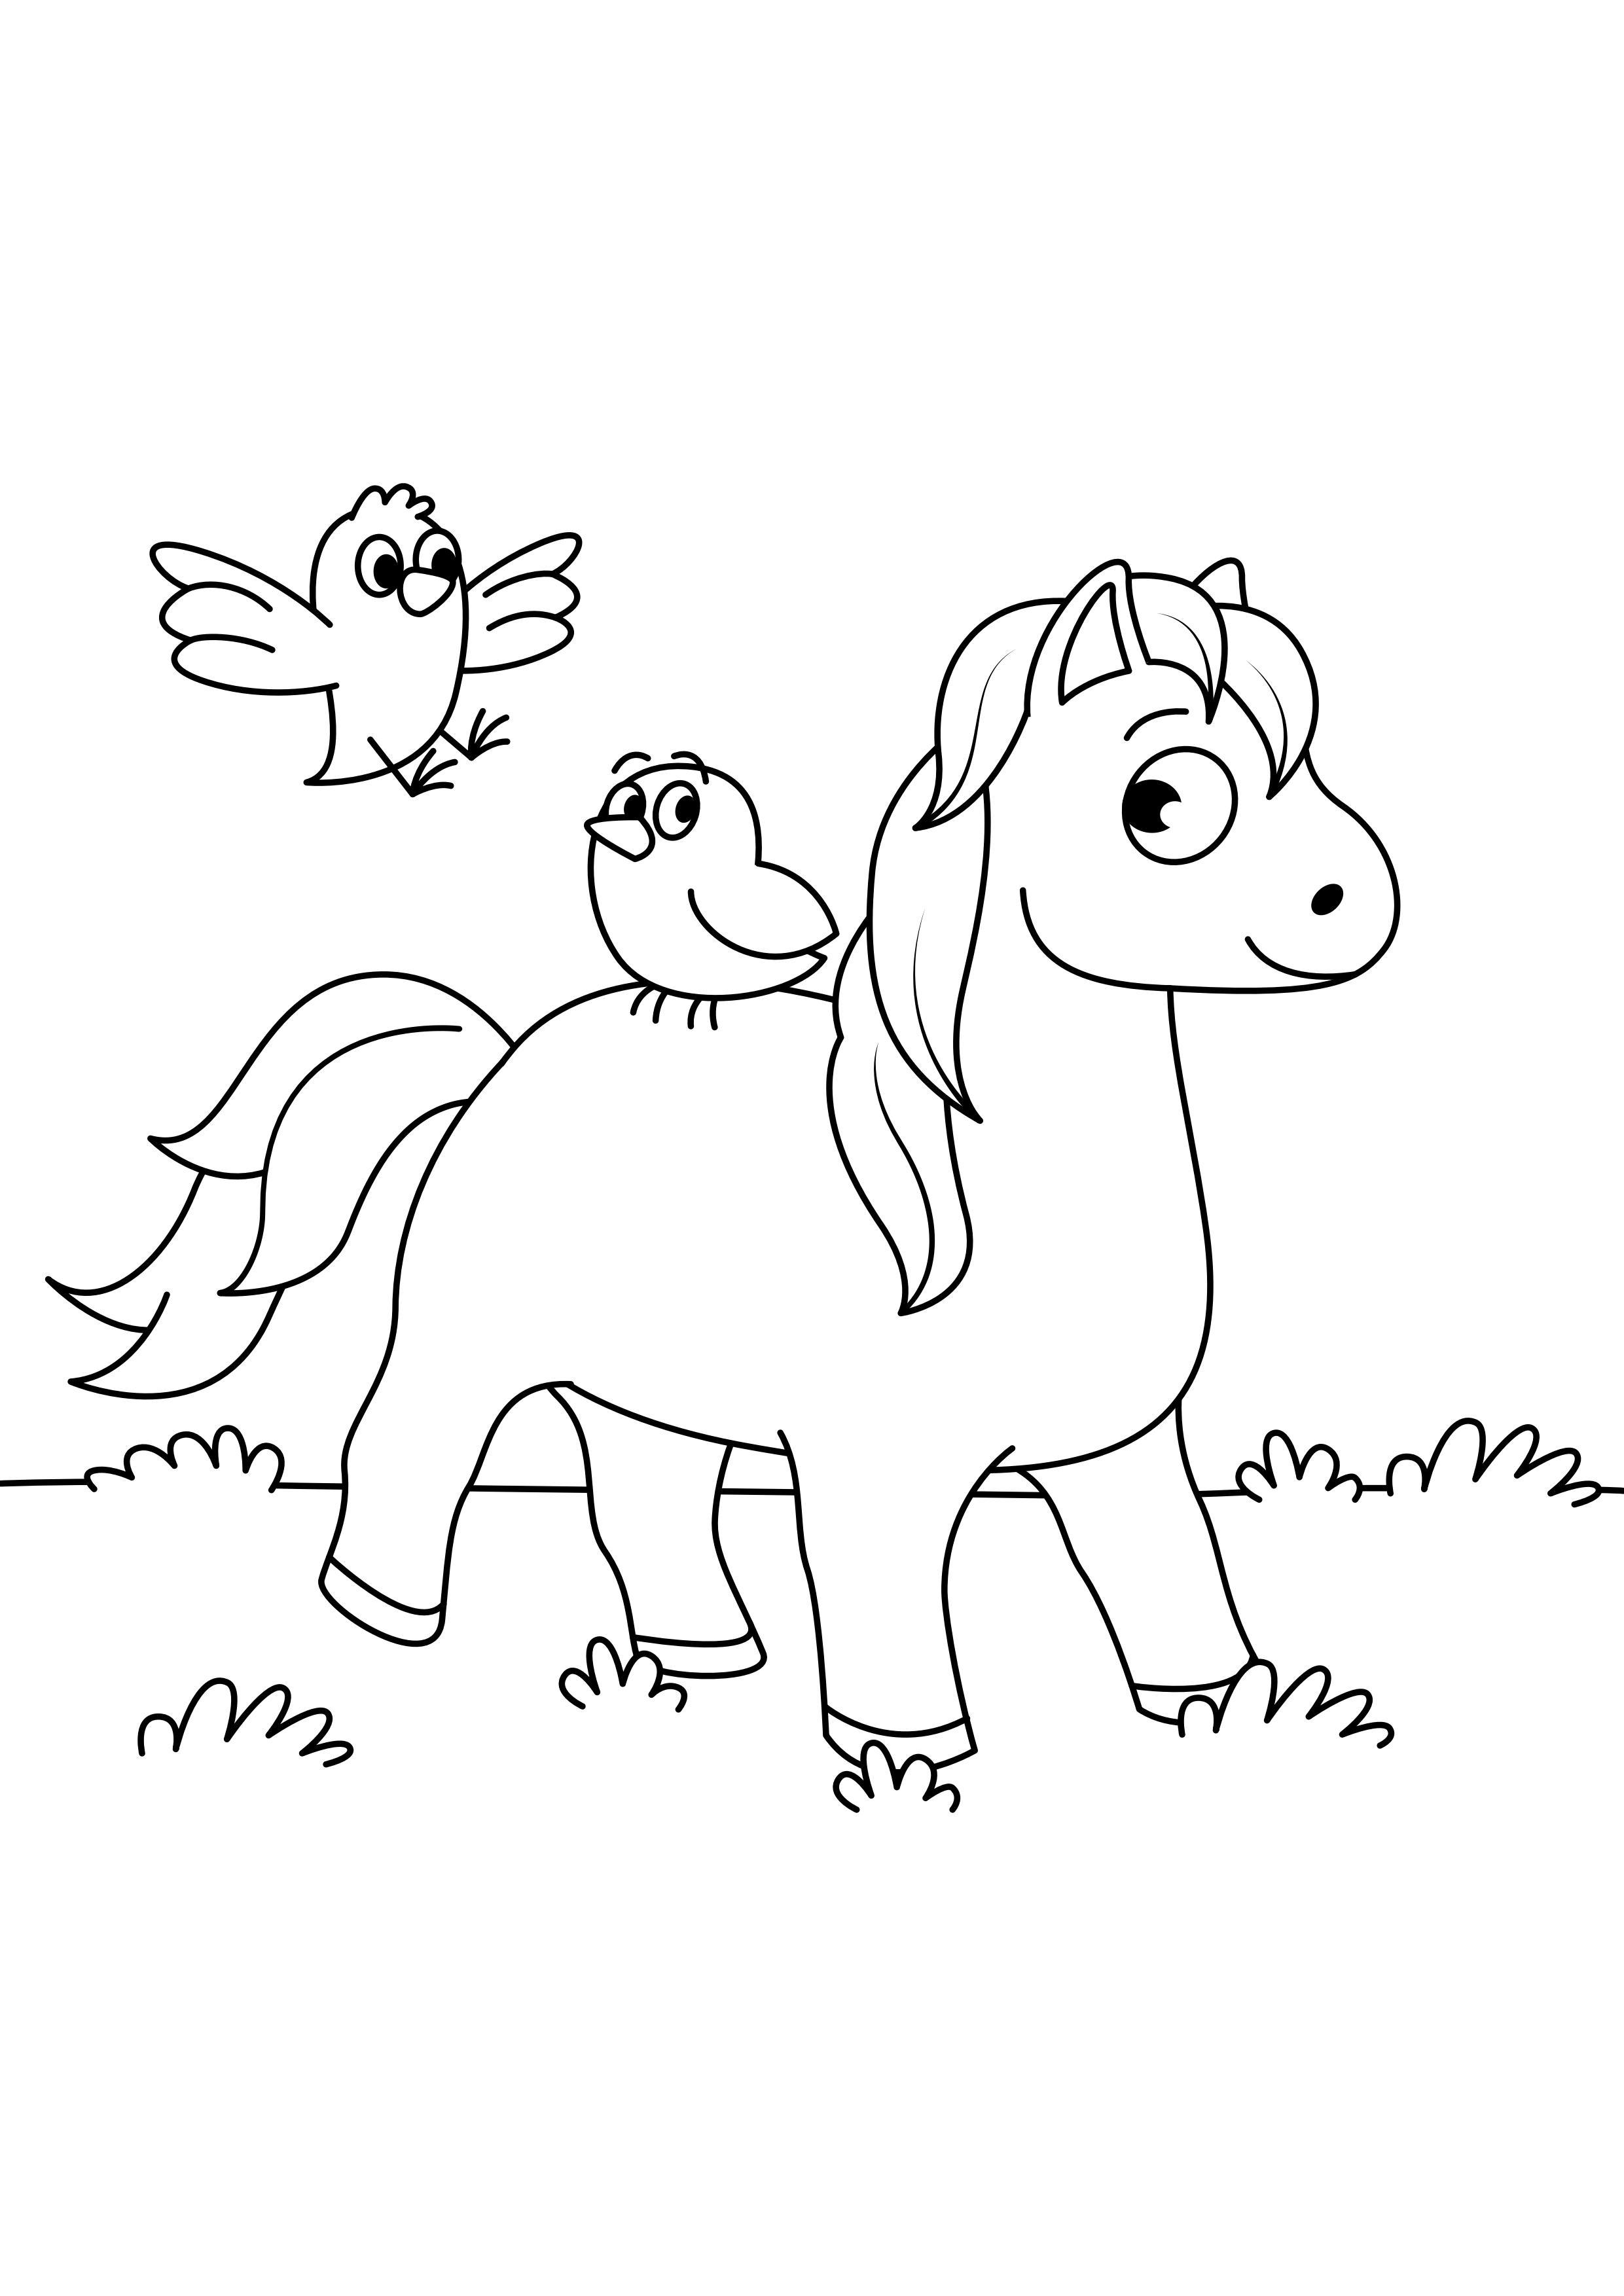 Dibujo para colorear caballo con pÃ¡jaros